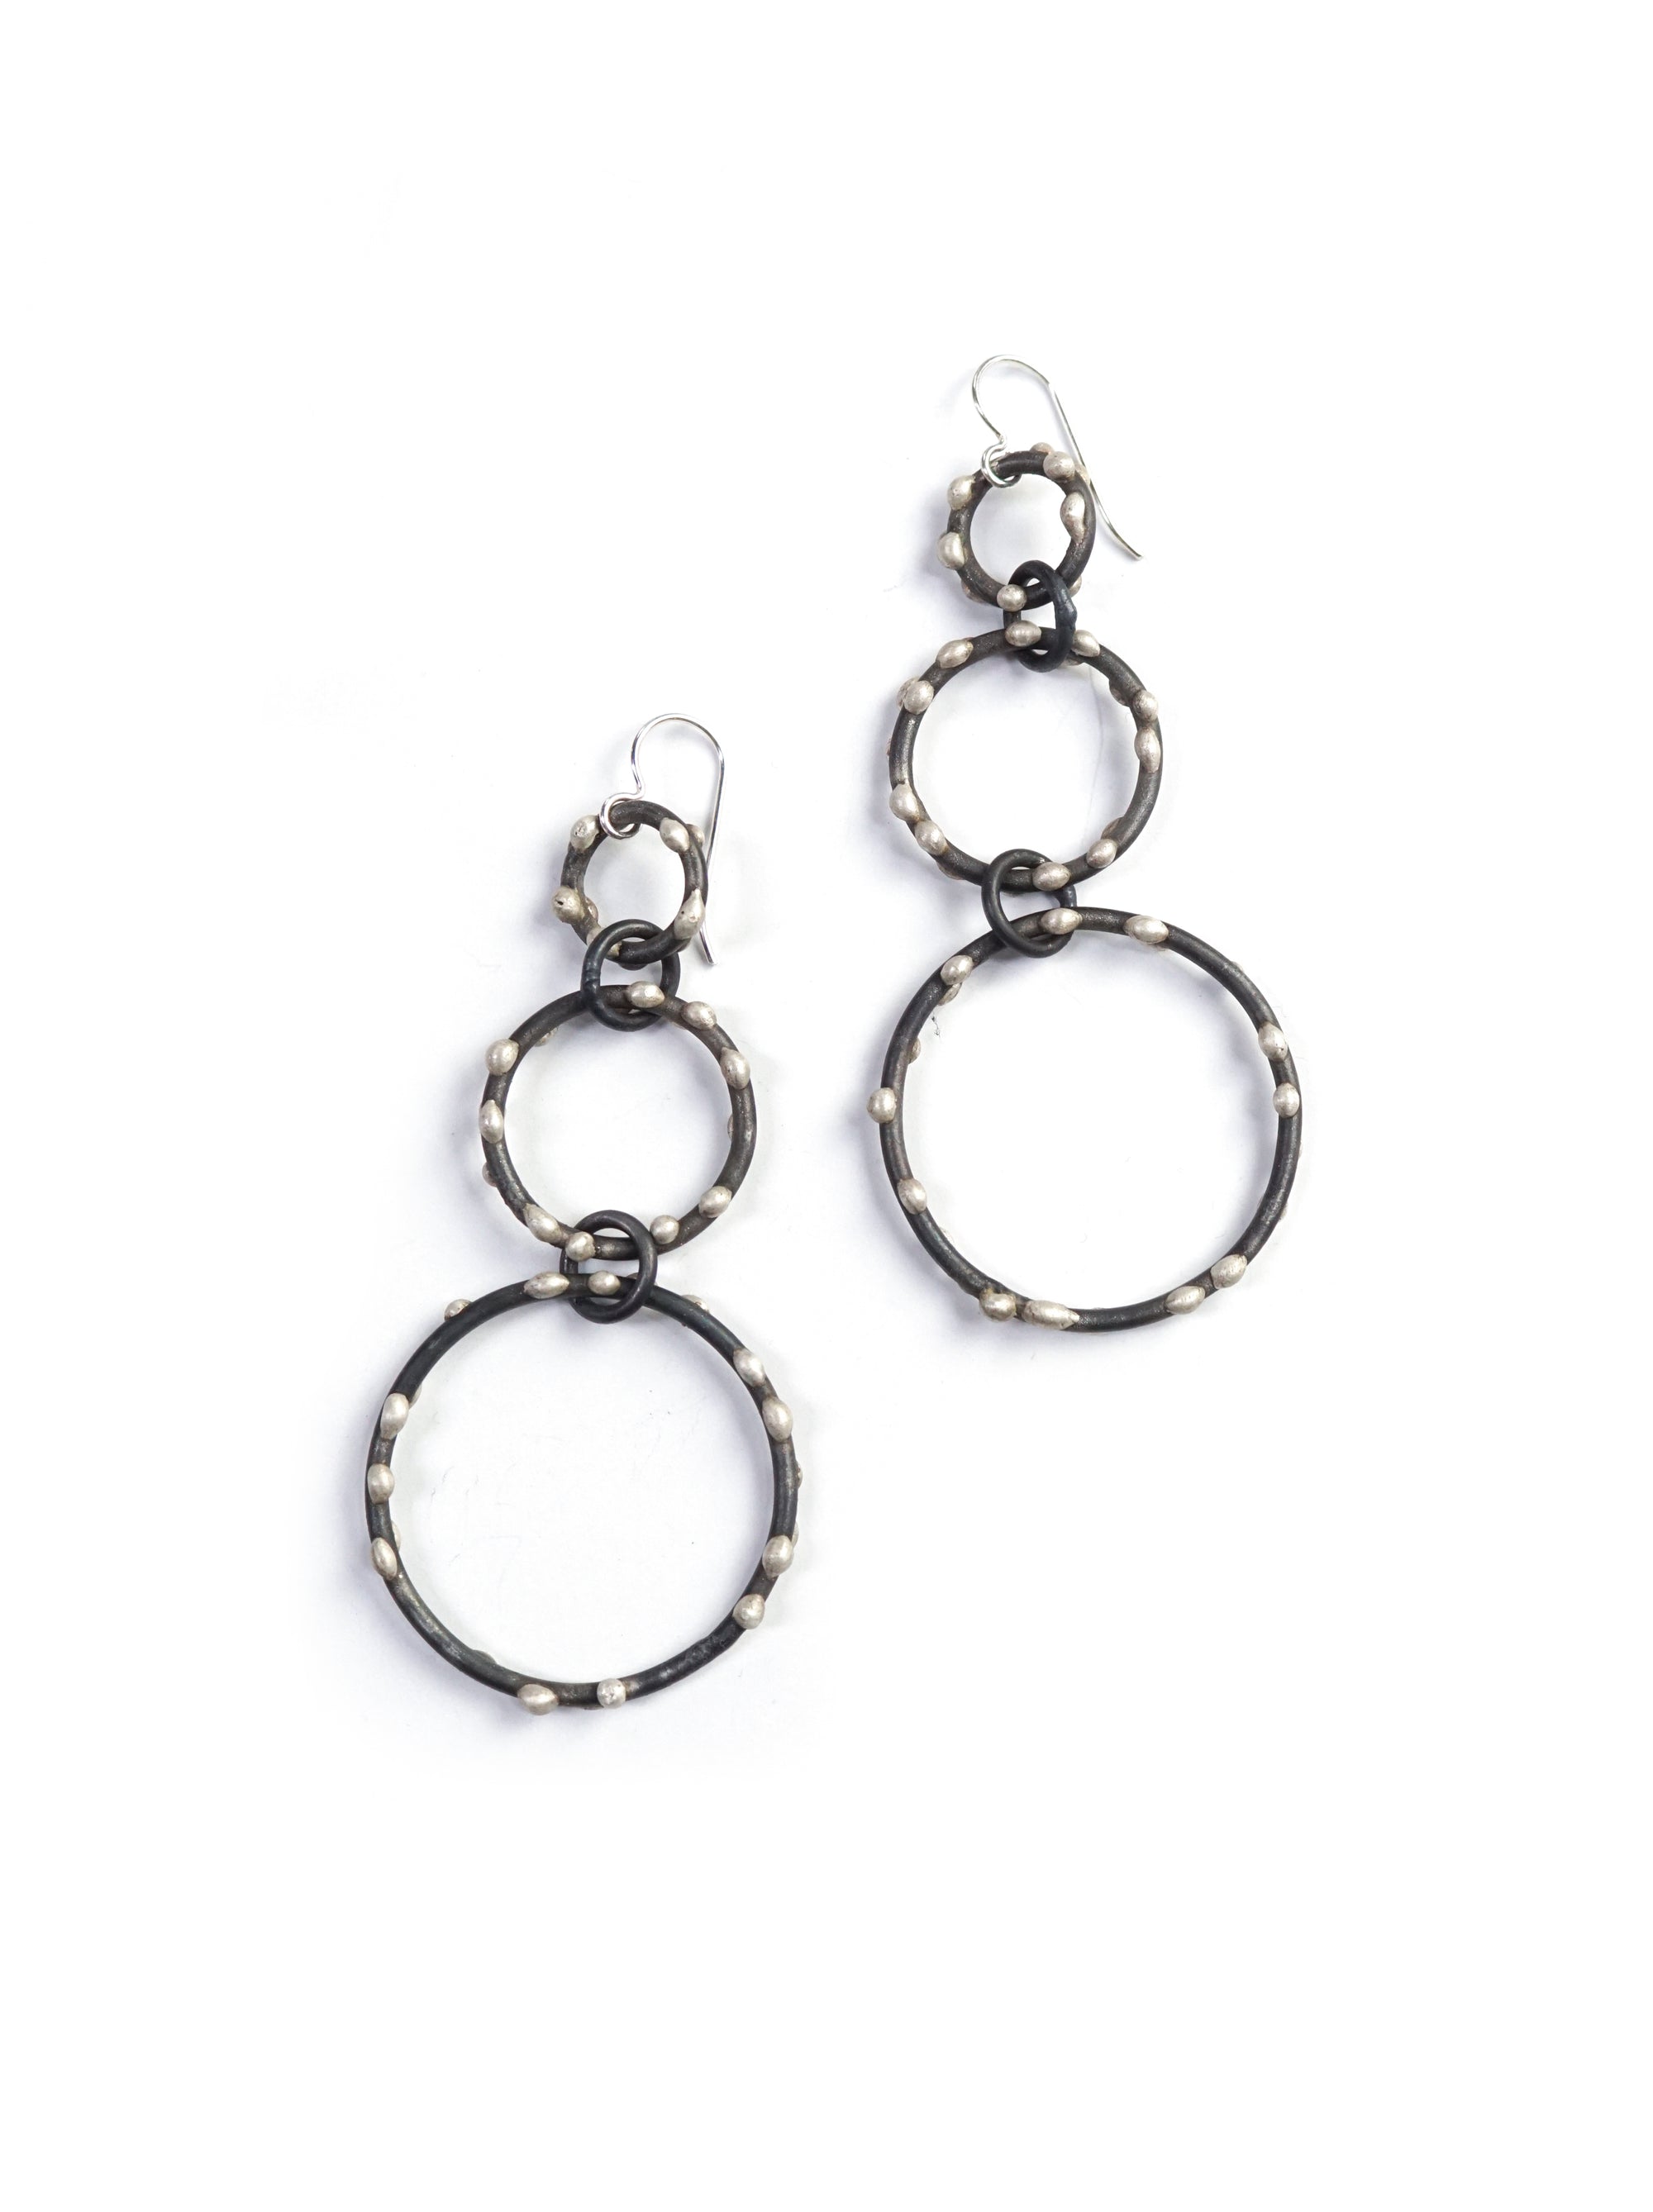 silver on steel handmade triple circle earrings